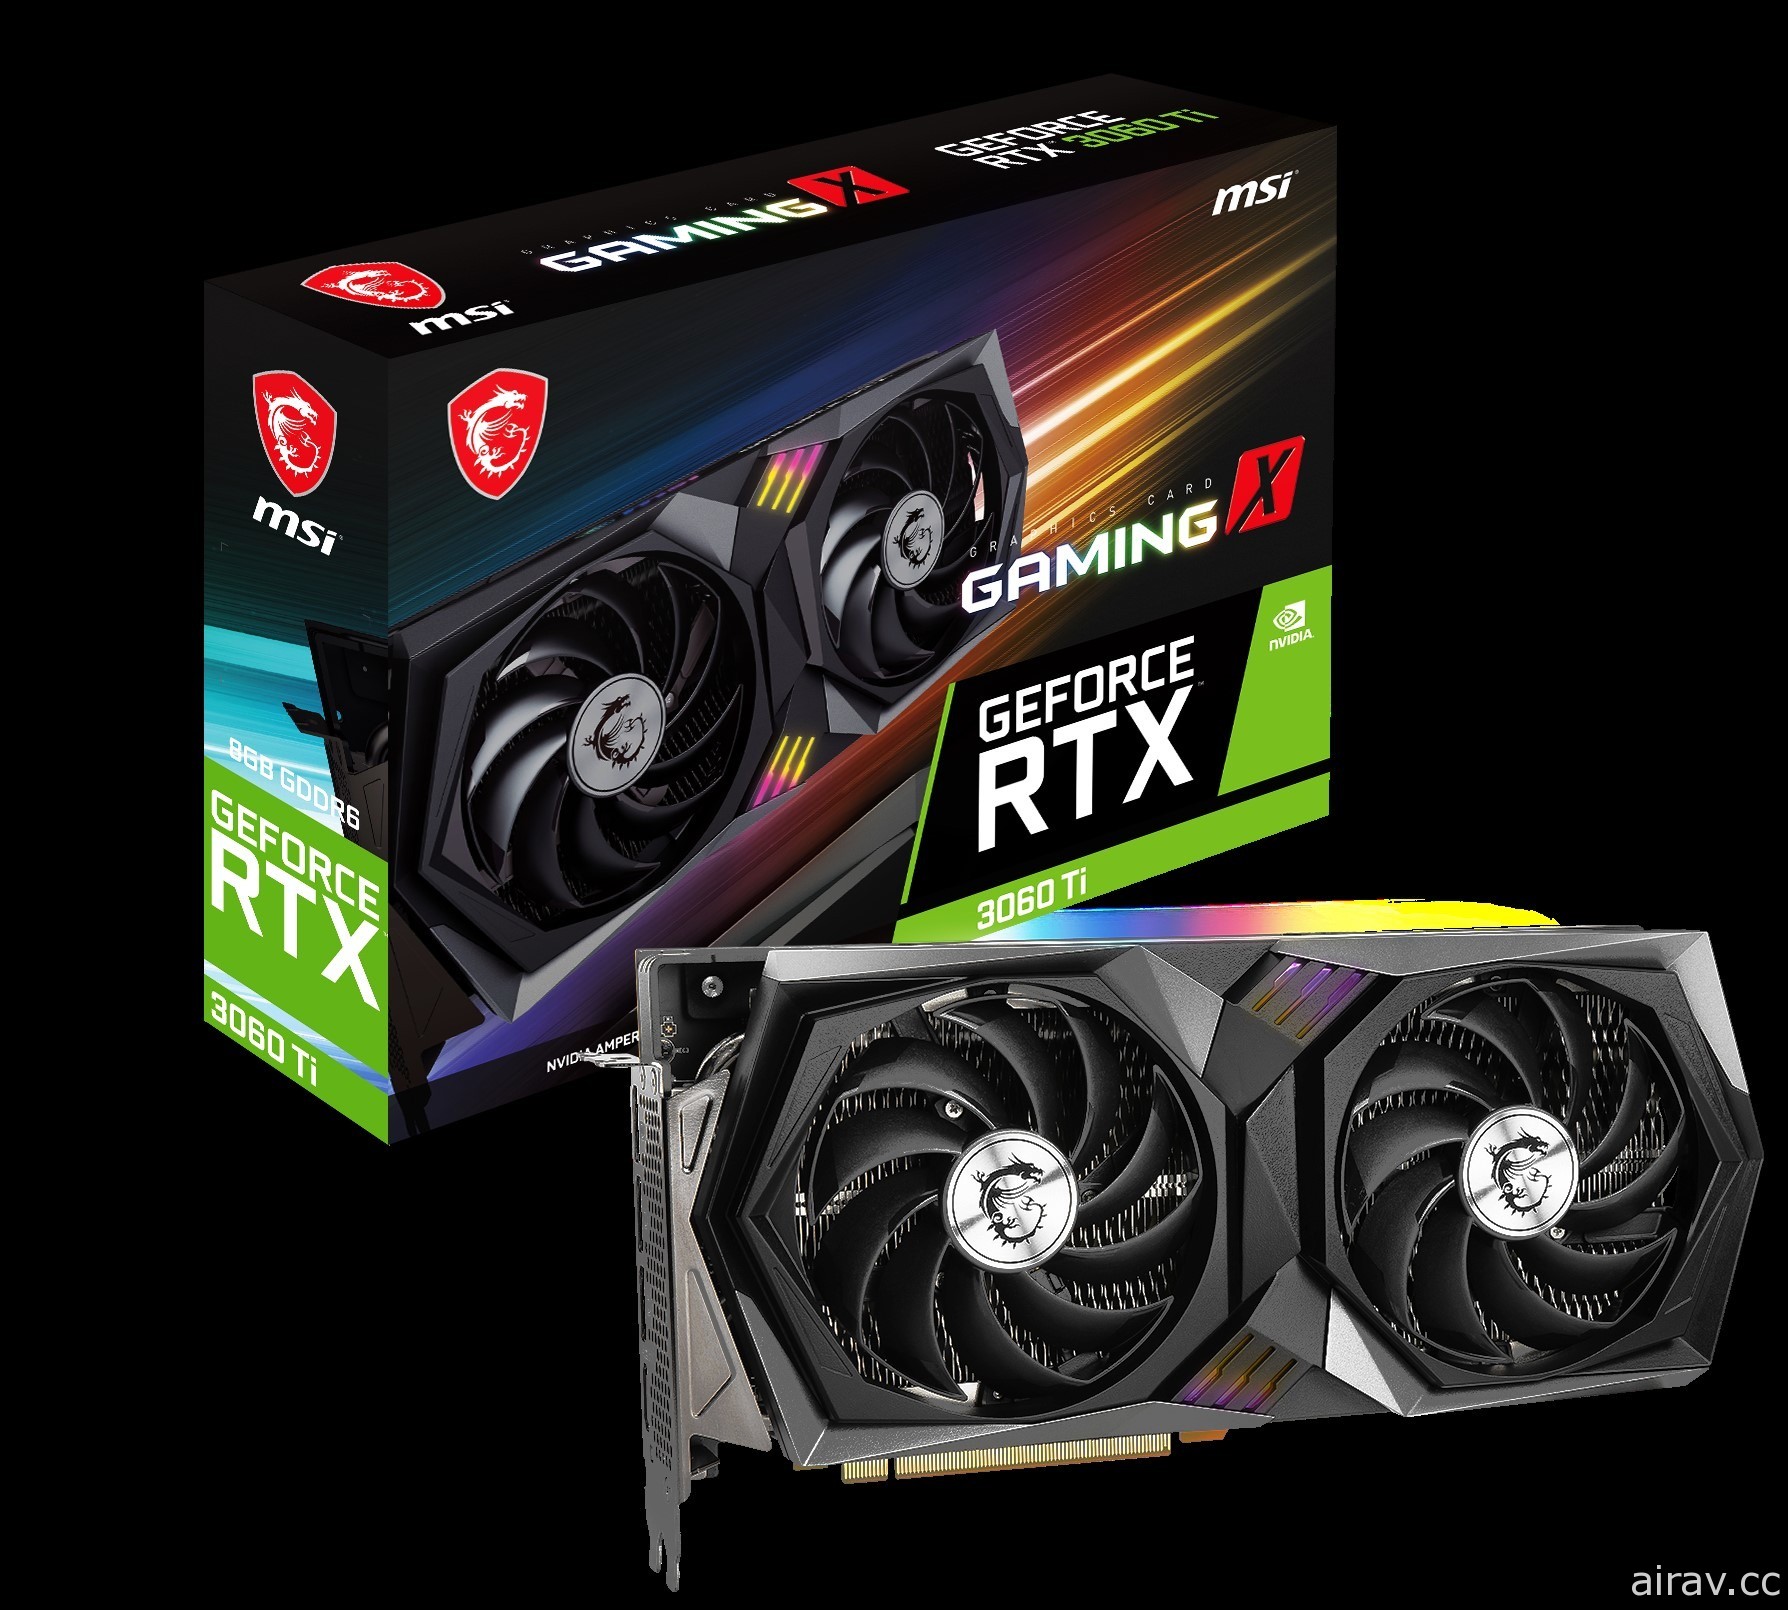 微星科技發表 GeForce RTX 3060 Ti 系列顯卡 融合最新的圖形技術等